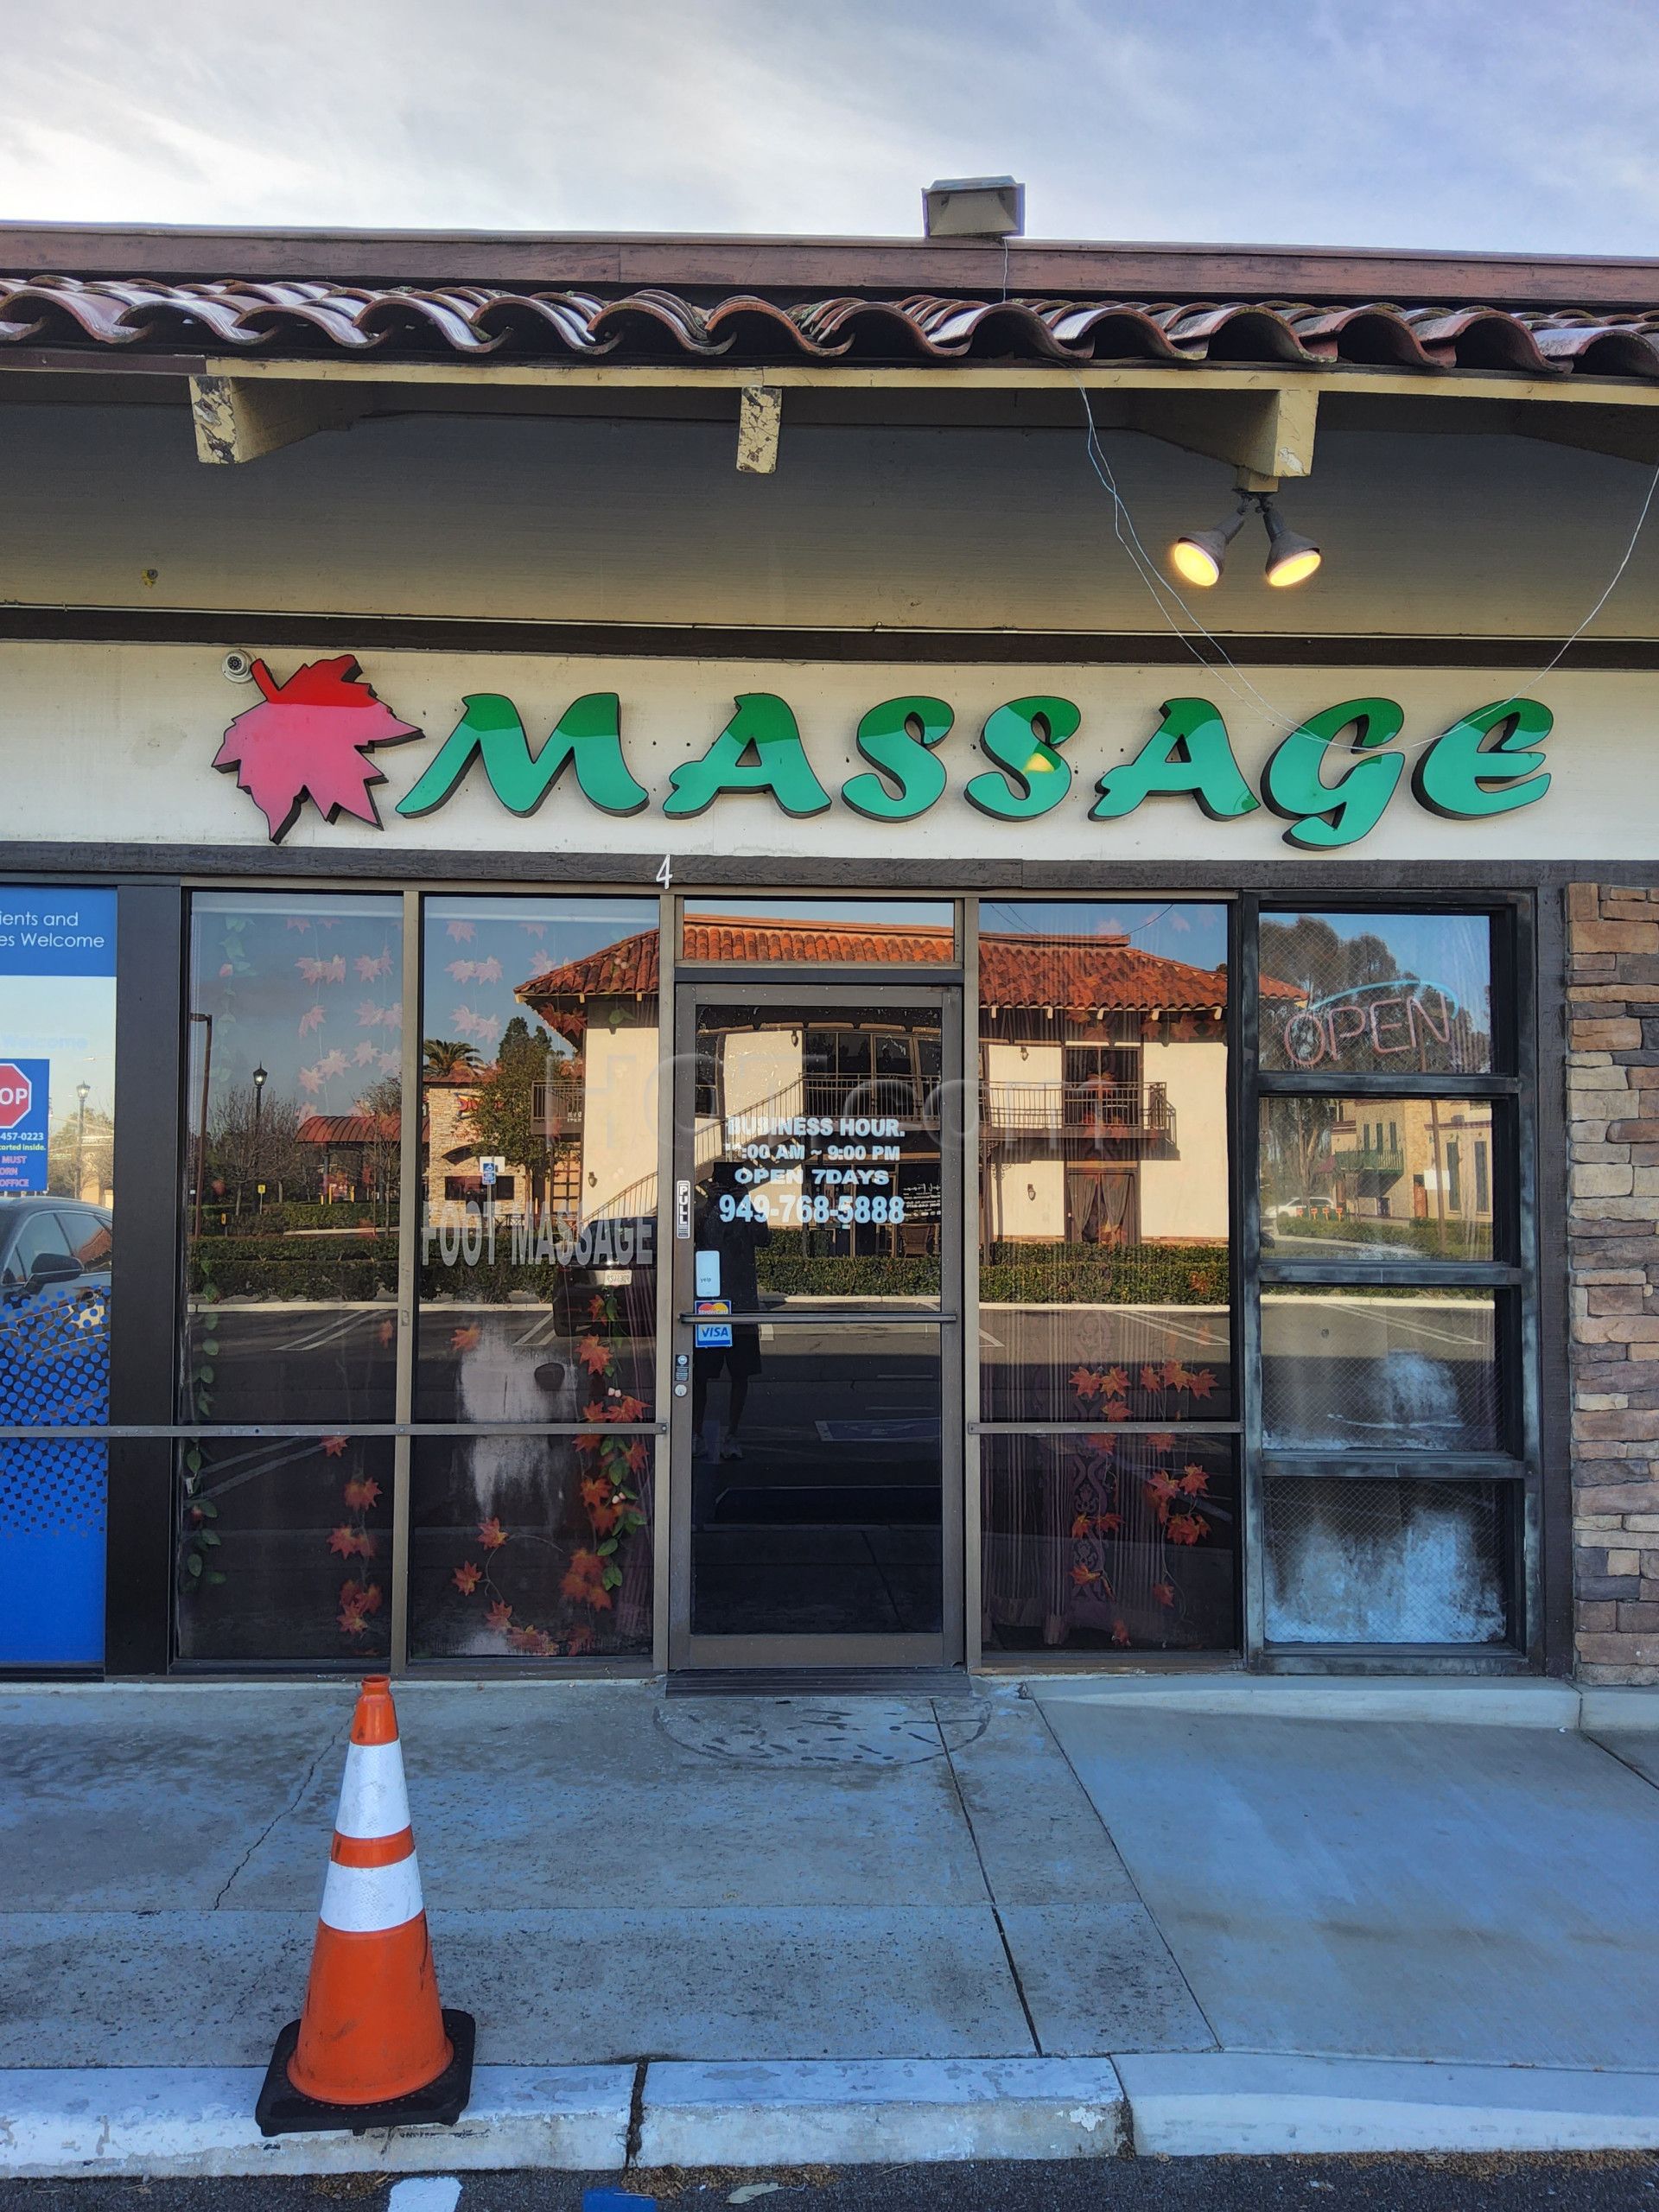 Mission Viejo, California Maple Massage